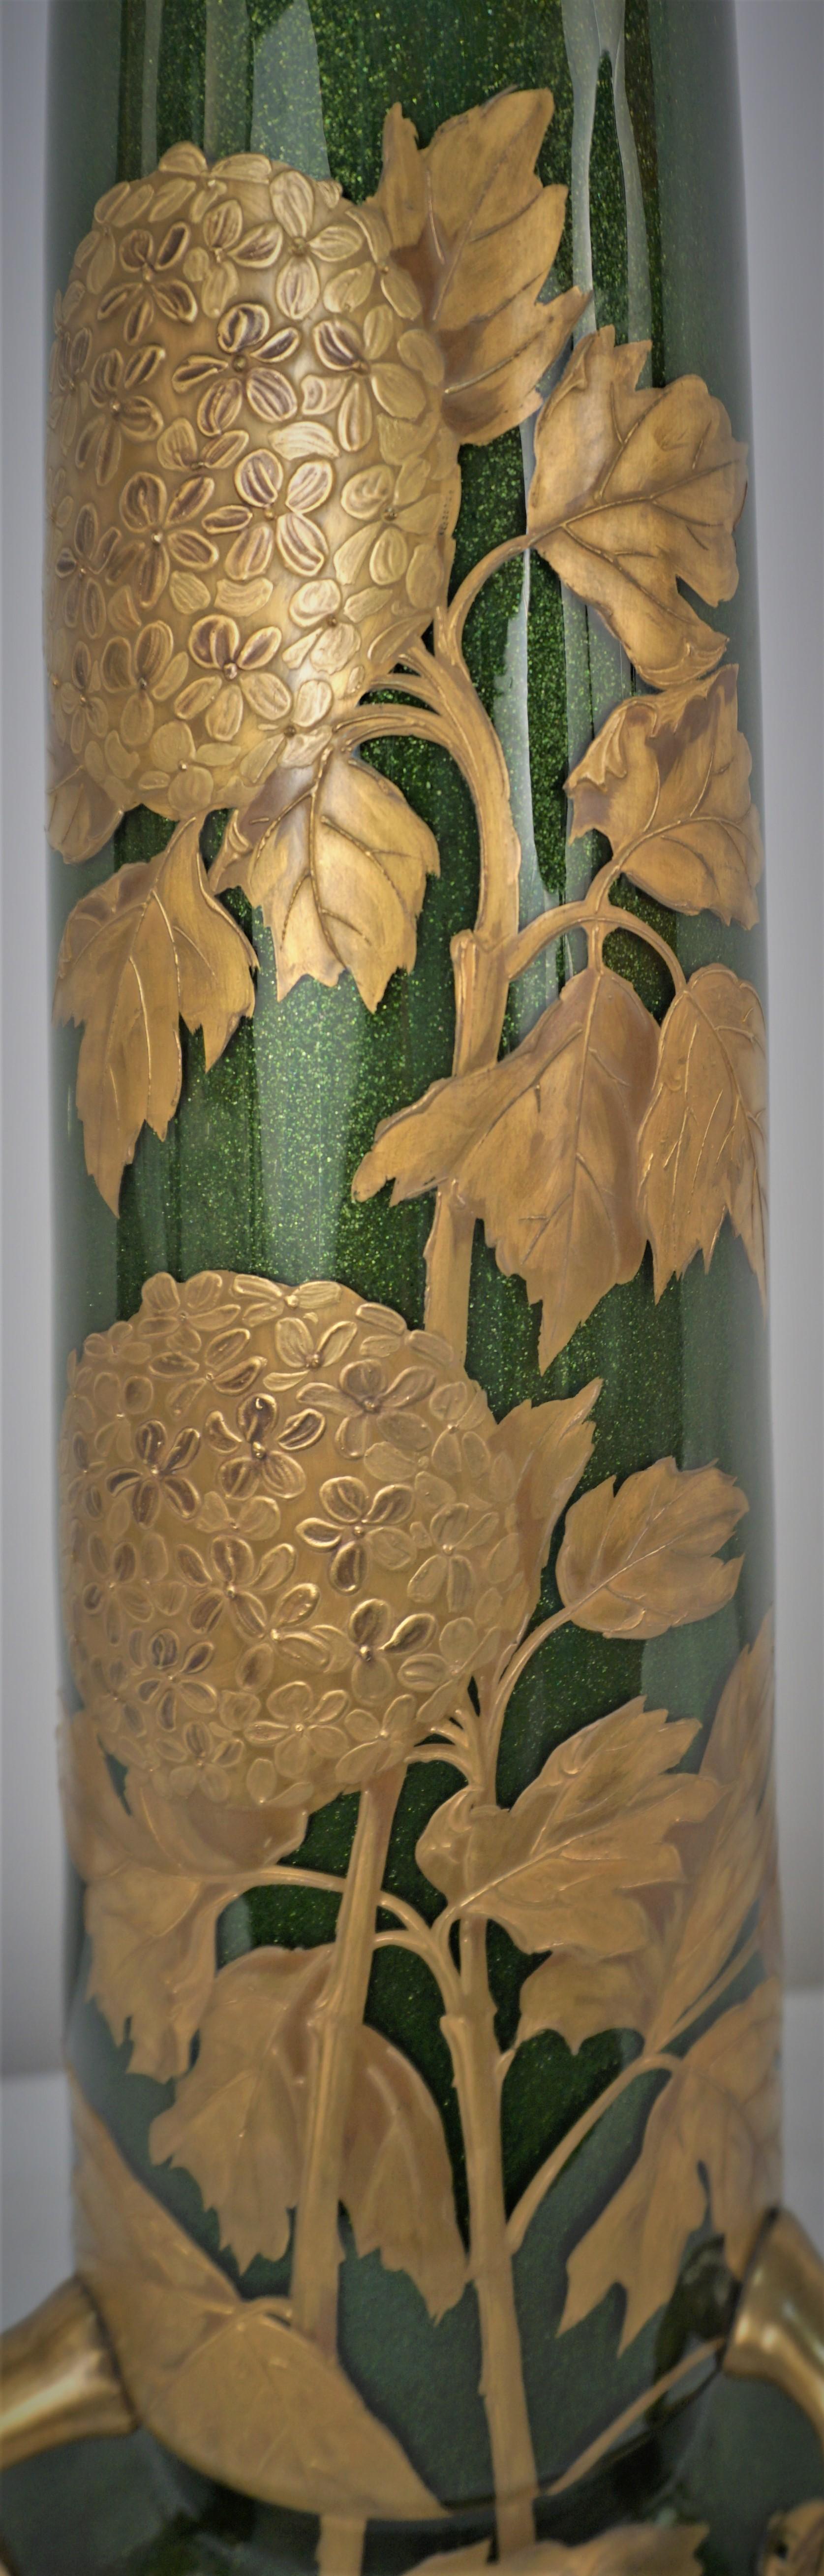 Large Art Nouveau Hand Painted Blown Glass Vase For Sale 1